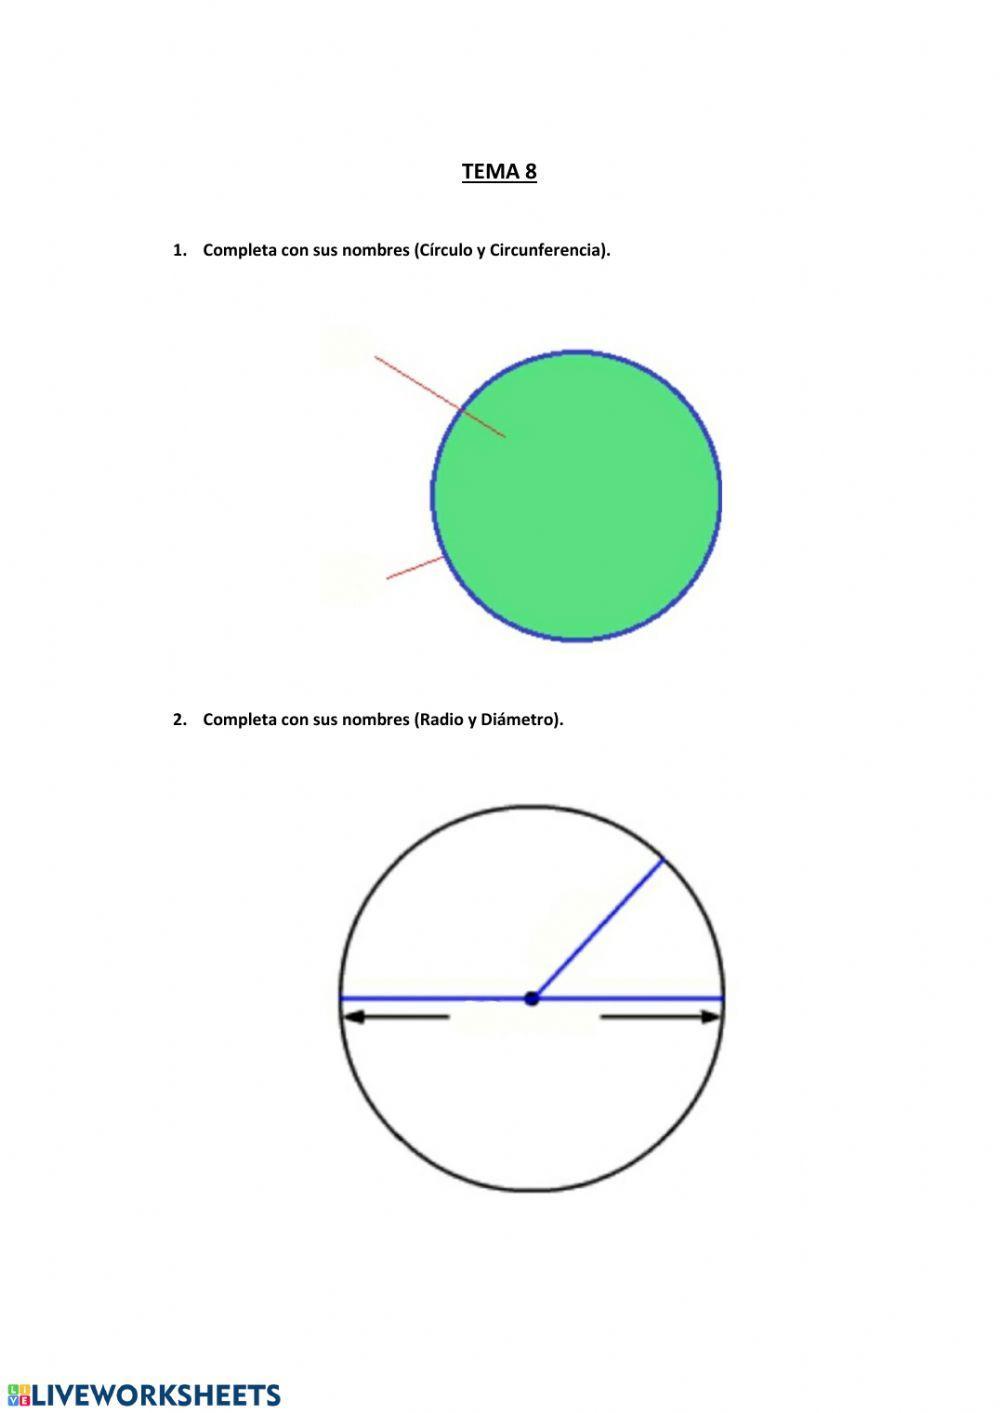 Círculo y circunferencia